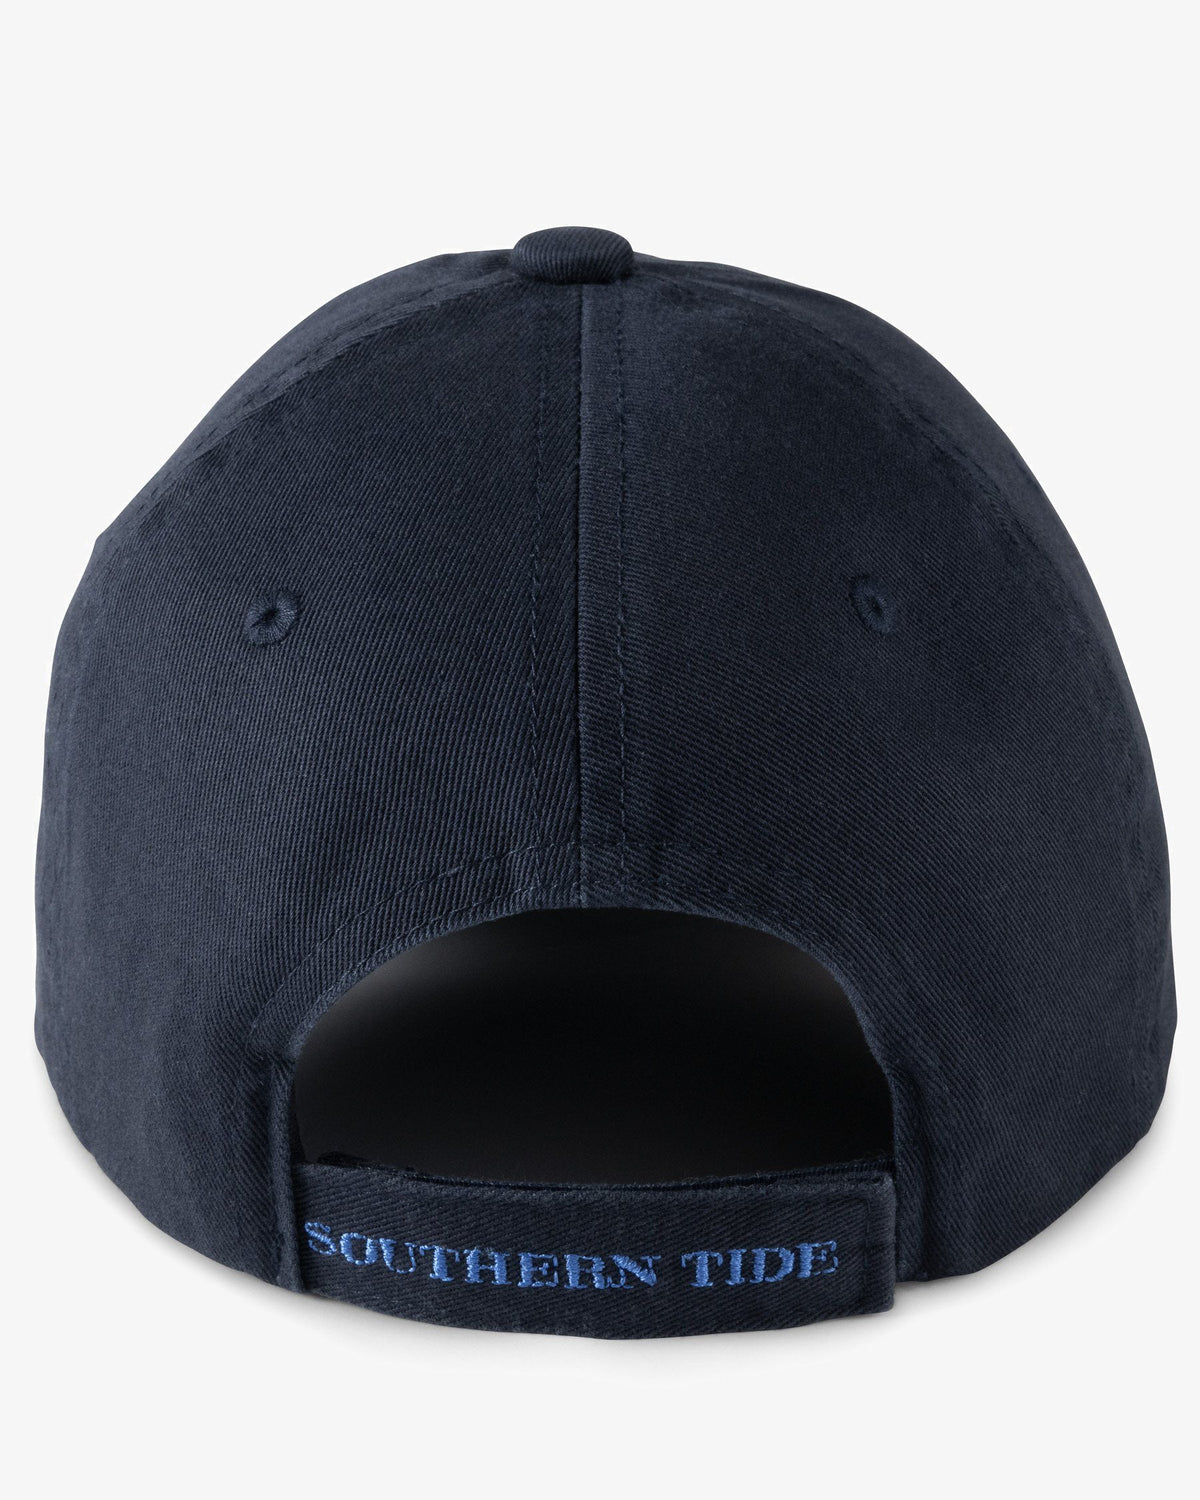 Kids Trucker Hats | Southern Tide